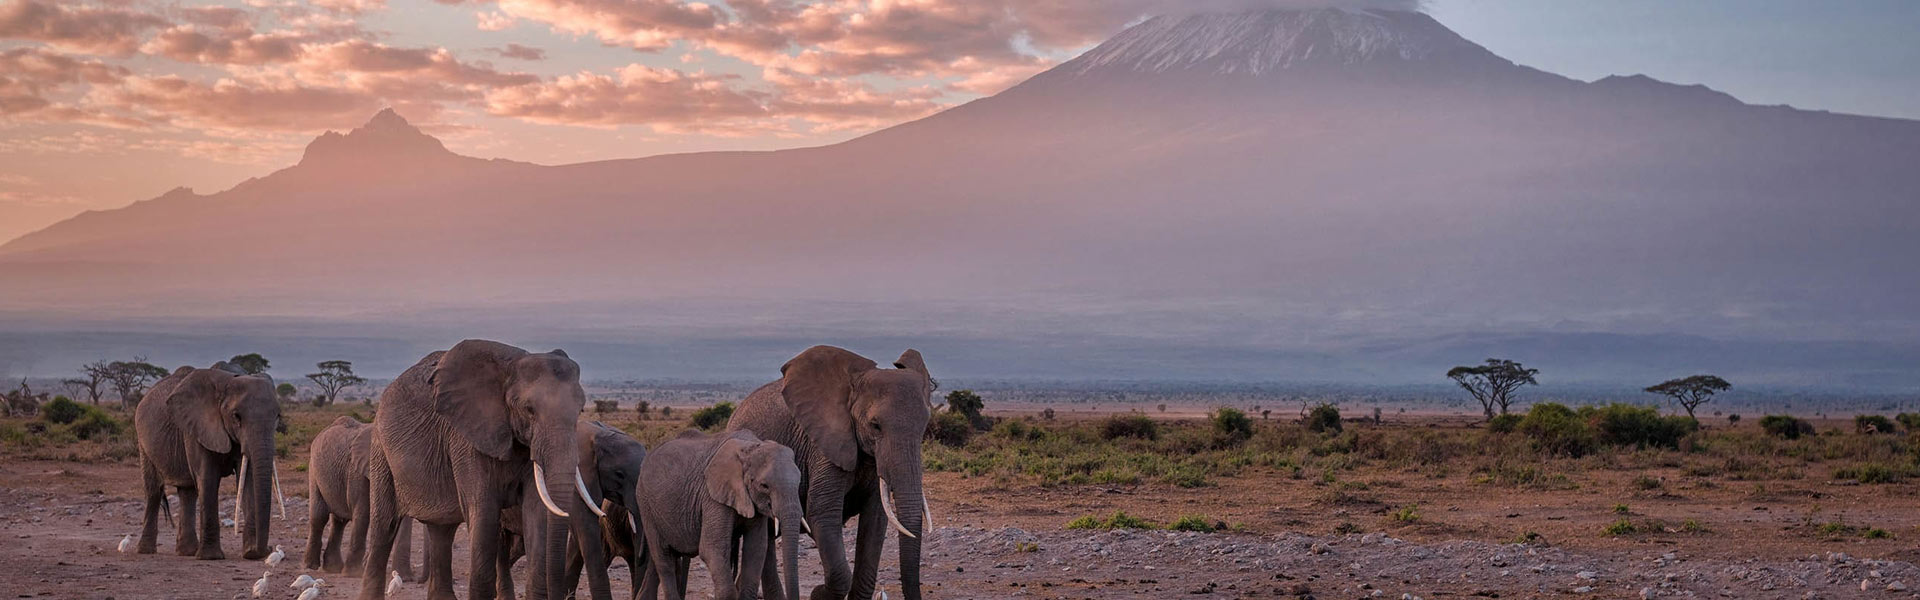 Kilimanjaro National Park Banner